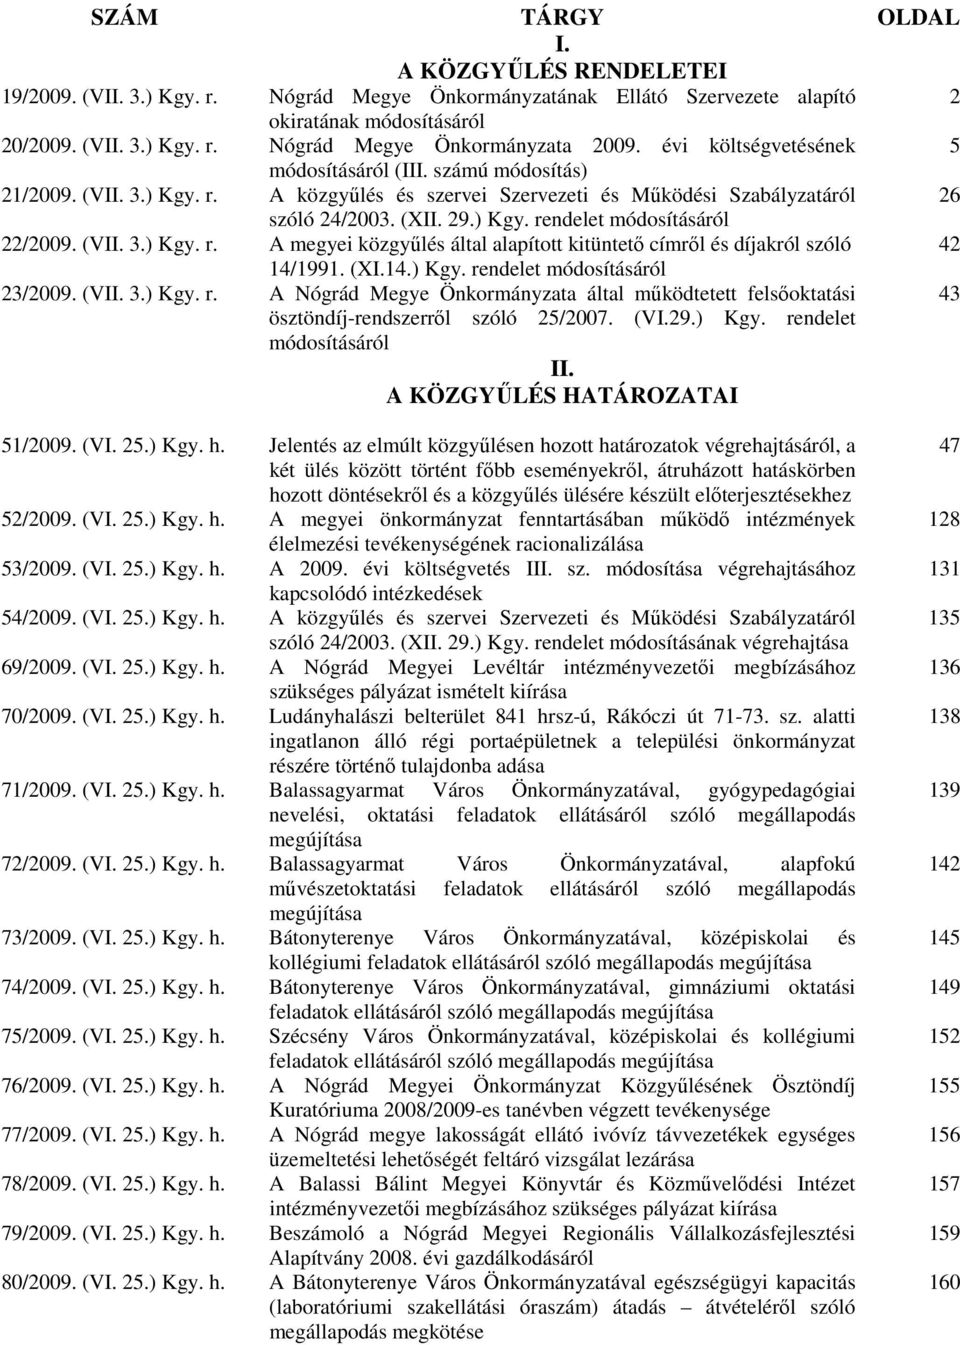 (VII. 3.) Kgy. r. A megyei közgyőlés által alapított kitüntetı címrıl és díjakról szóló 42 14/1991. (XI.14.) Kgy. rendelet módosításáról 23/2009. (VII. 3.) Kgy. r. A Nógrád Megye Önkormányzata által mőködtetett felsıoktatási 43 ösztöndíj-rendszerrıl szóló 25/2007.